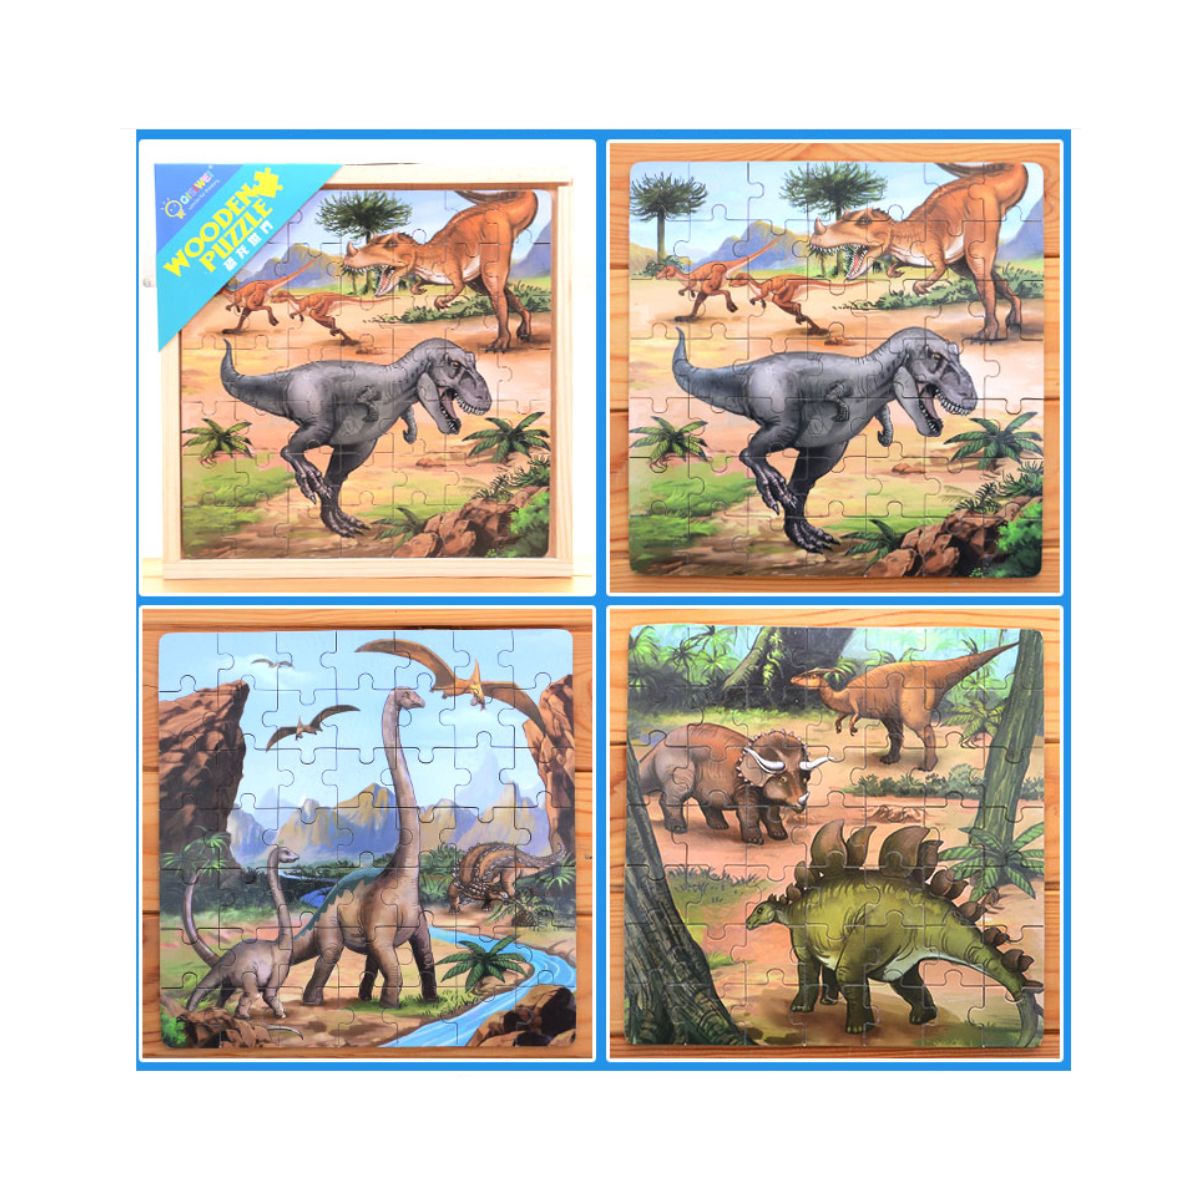 Jucarii interior - Puzzle 3 in 1 din lemn in cutie cu tematica – Dinozauri, WD 9002C, hectarul.ro